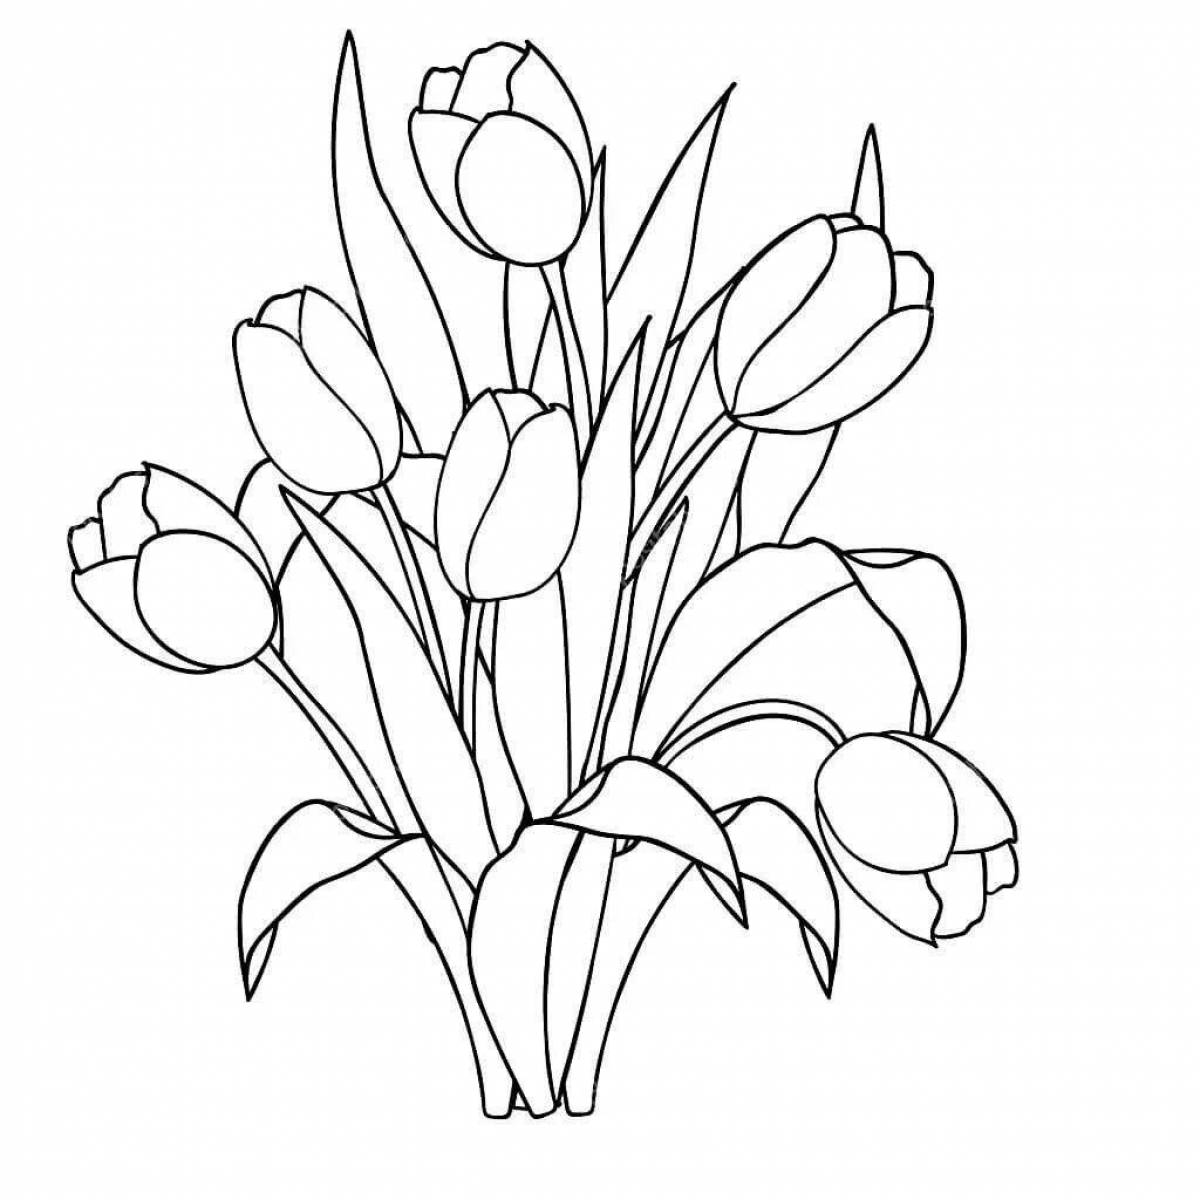 Прекрасные тюльпаны 8 марта раскраски